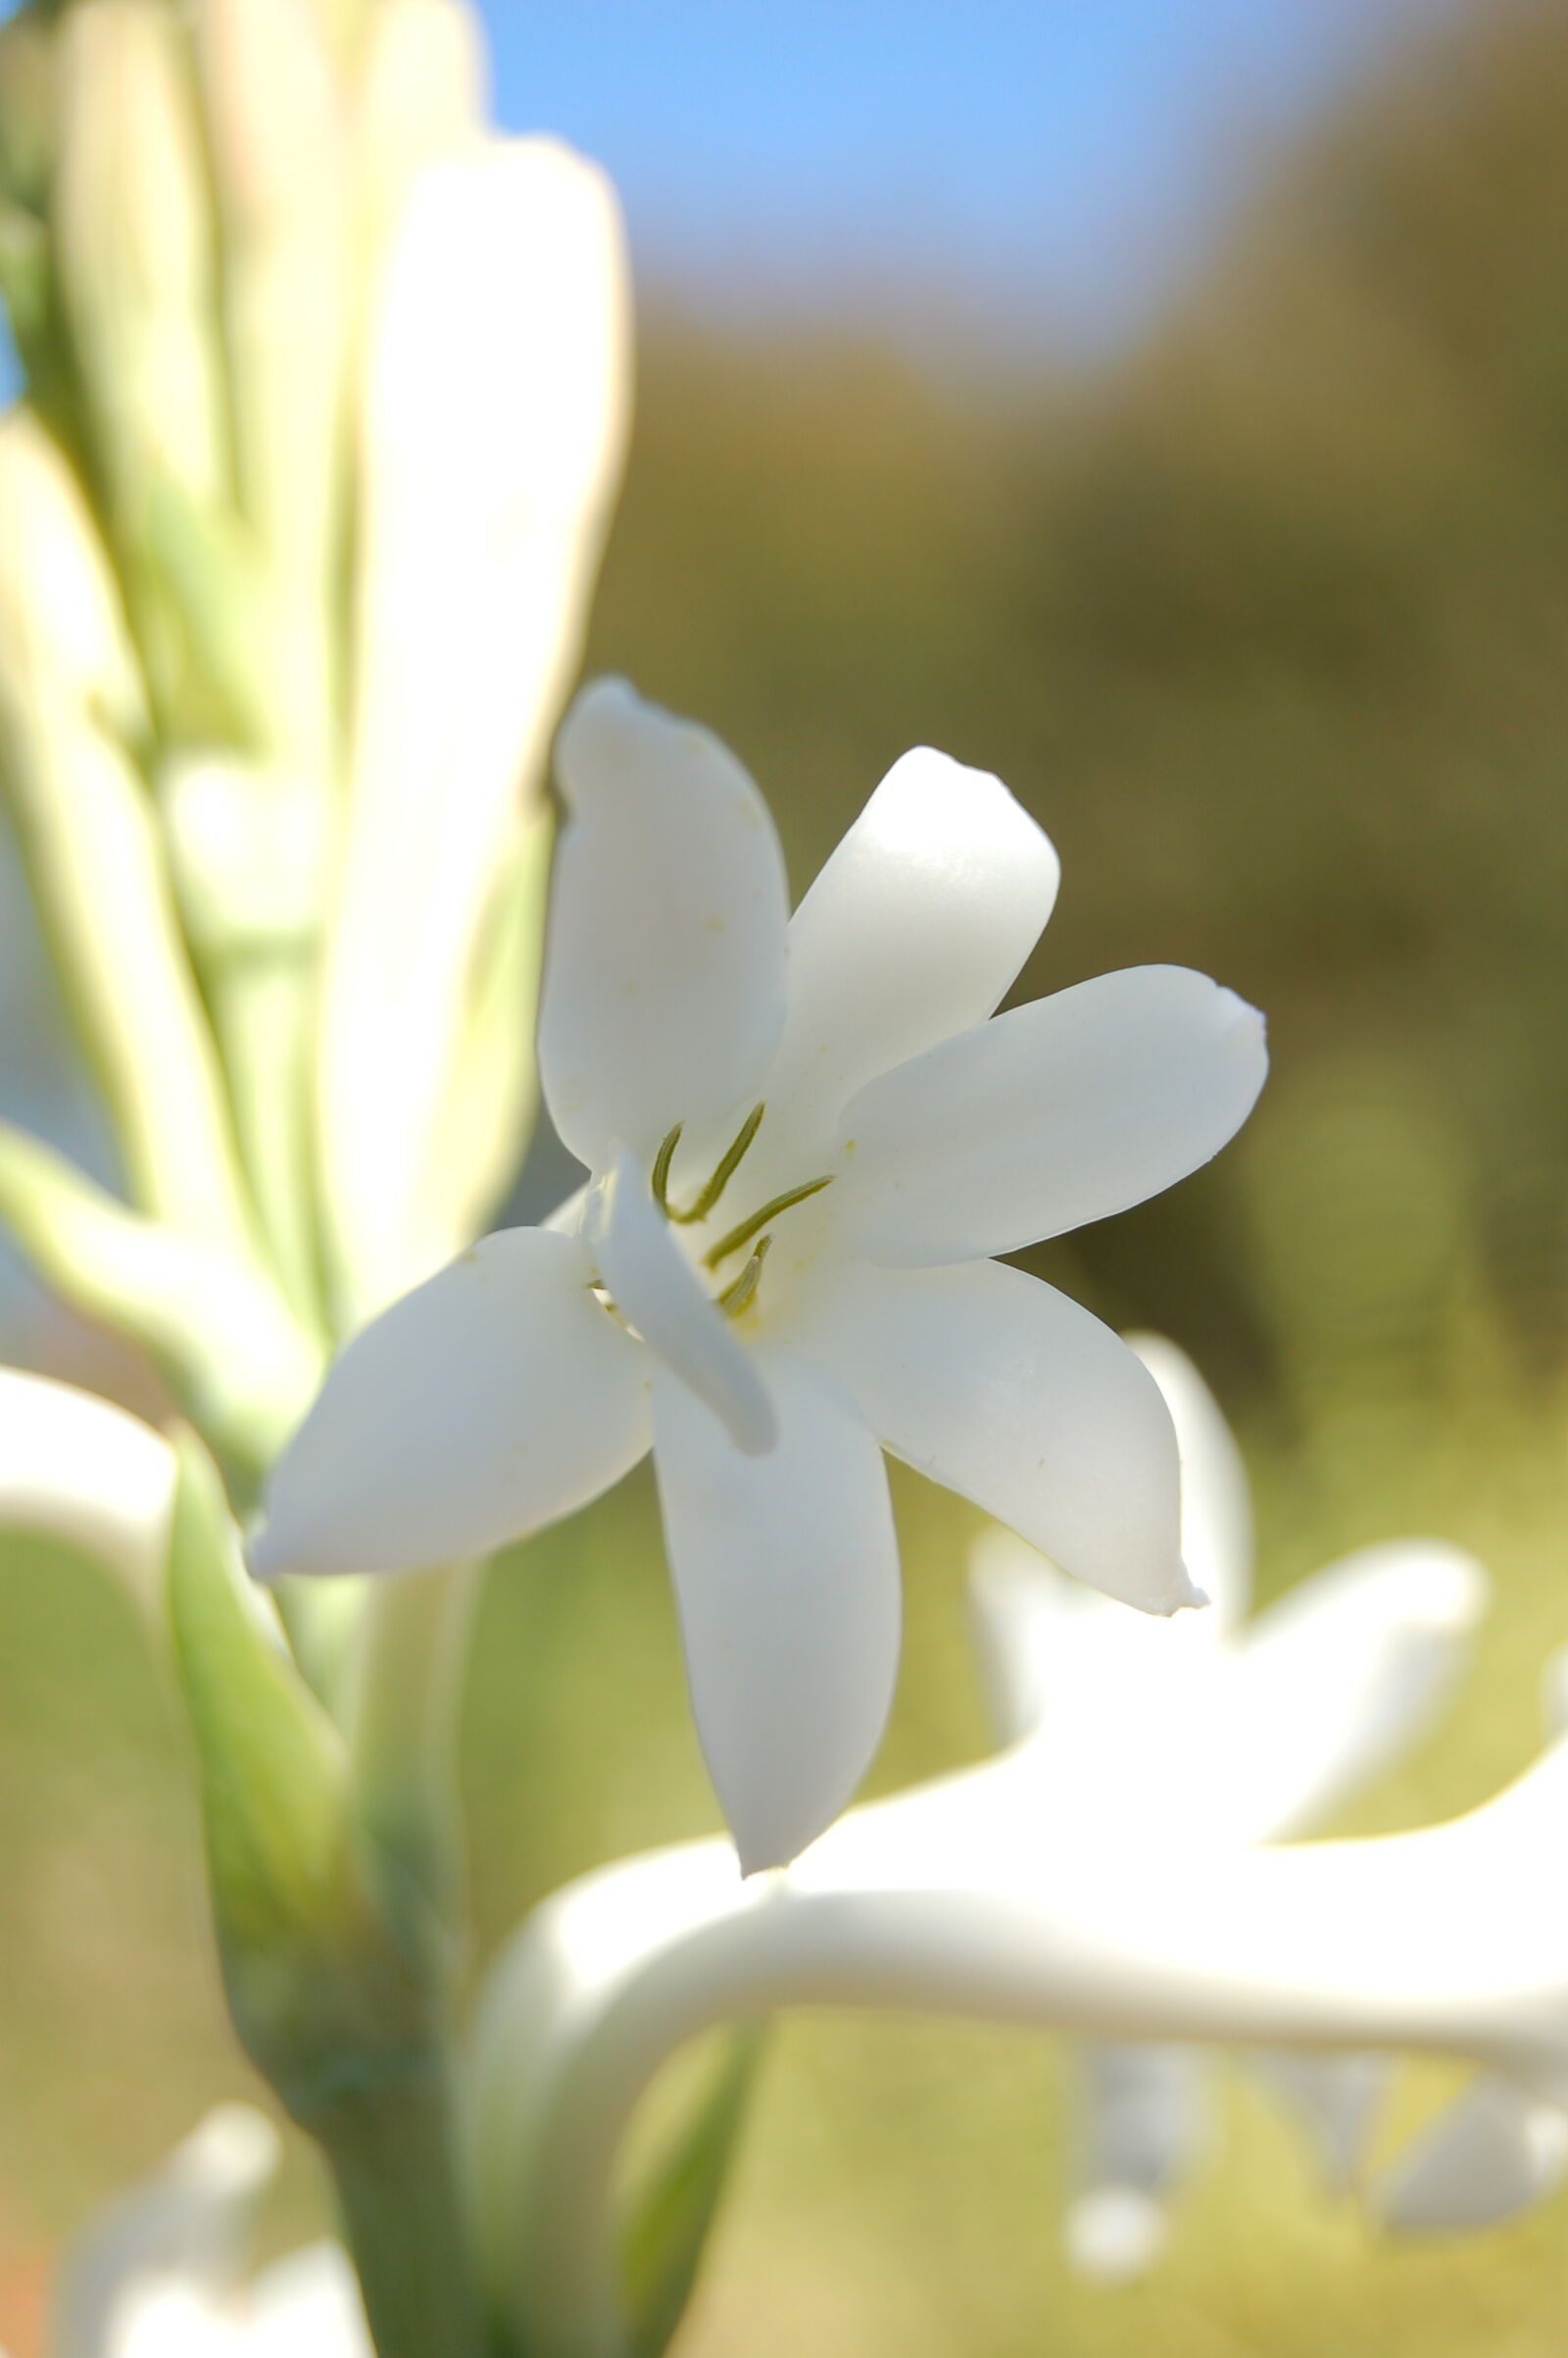 AF-S DX Zoom-Nikkor 18-55mm f/3.5-5.6G ED sample photo. Flower, garden, white, flower photography